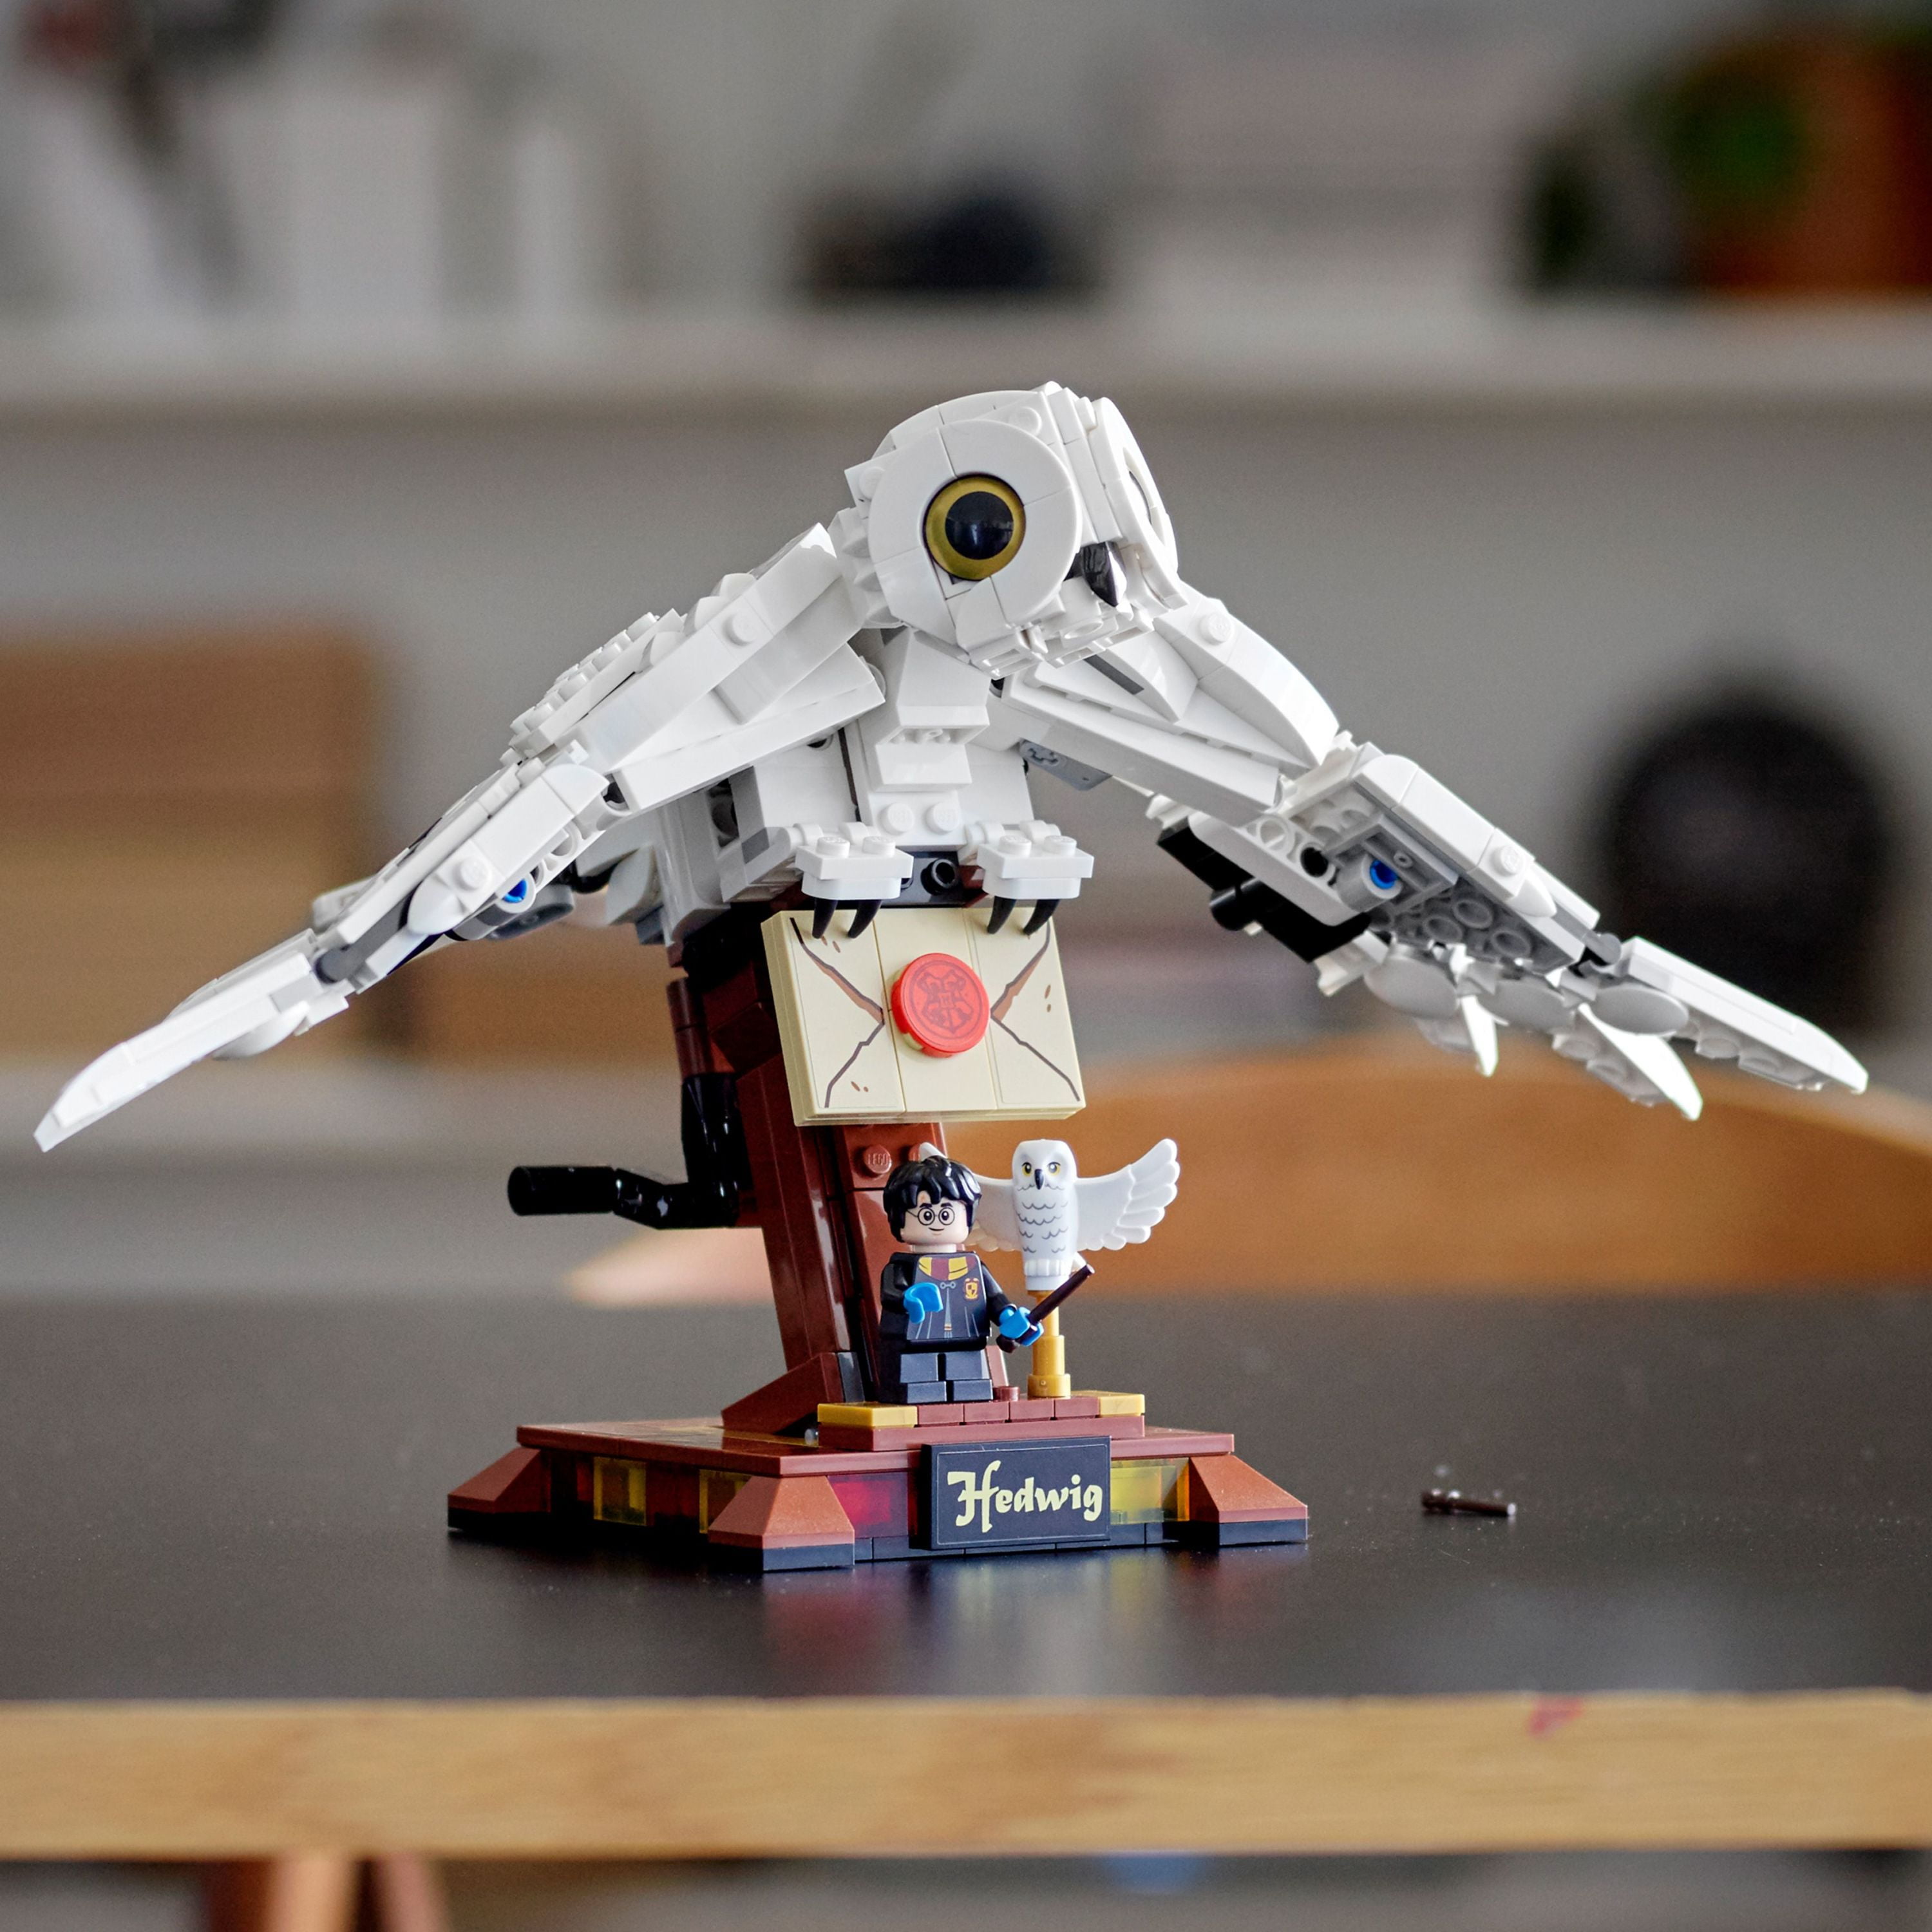 Lego Harry Potter - Coruja Hedwig - 630 Peças 75979 Original na Americanas  Empresas